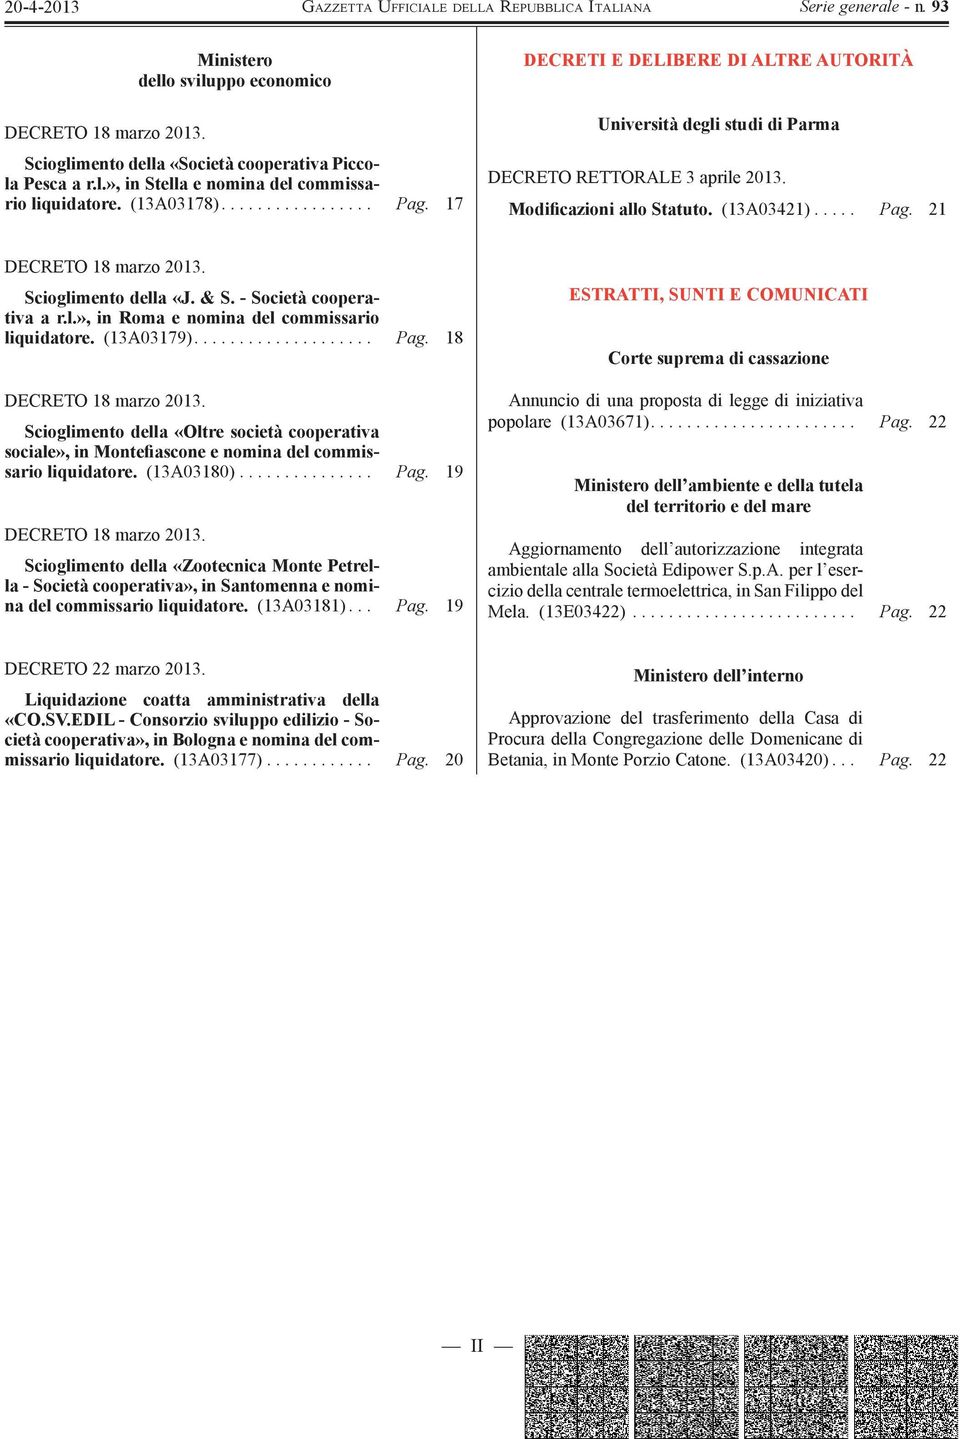 Scioglimento della «J. & S. - Società cooperativa a r.l.», in Roma e nomina del commissario liquidatore. (13A03179).................... Pag. 18 DECRETO 18 marzo 2013.